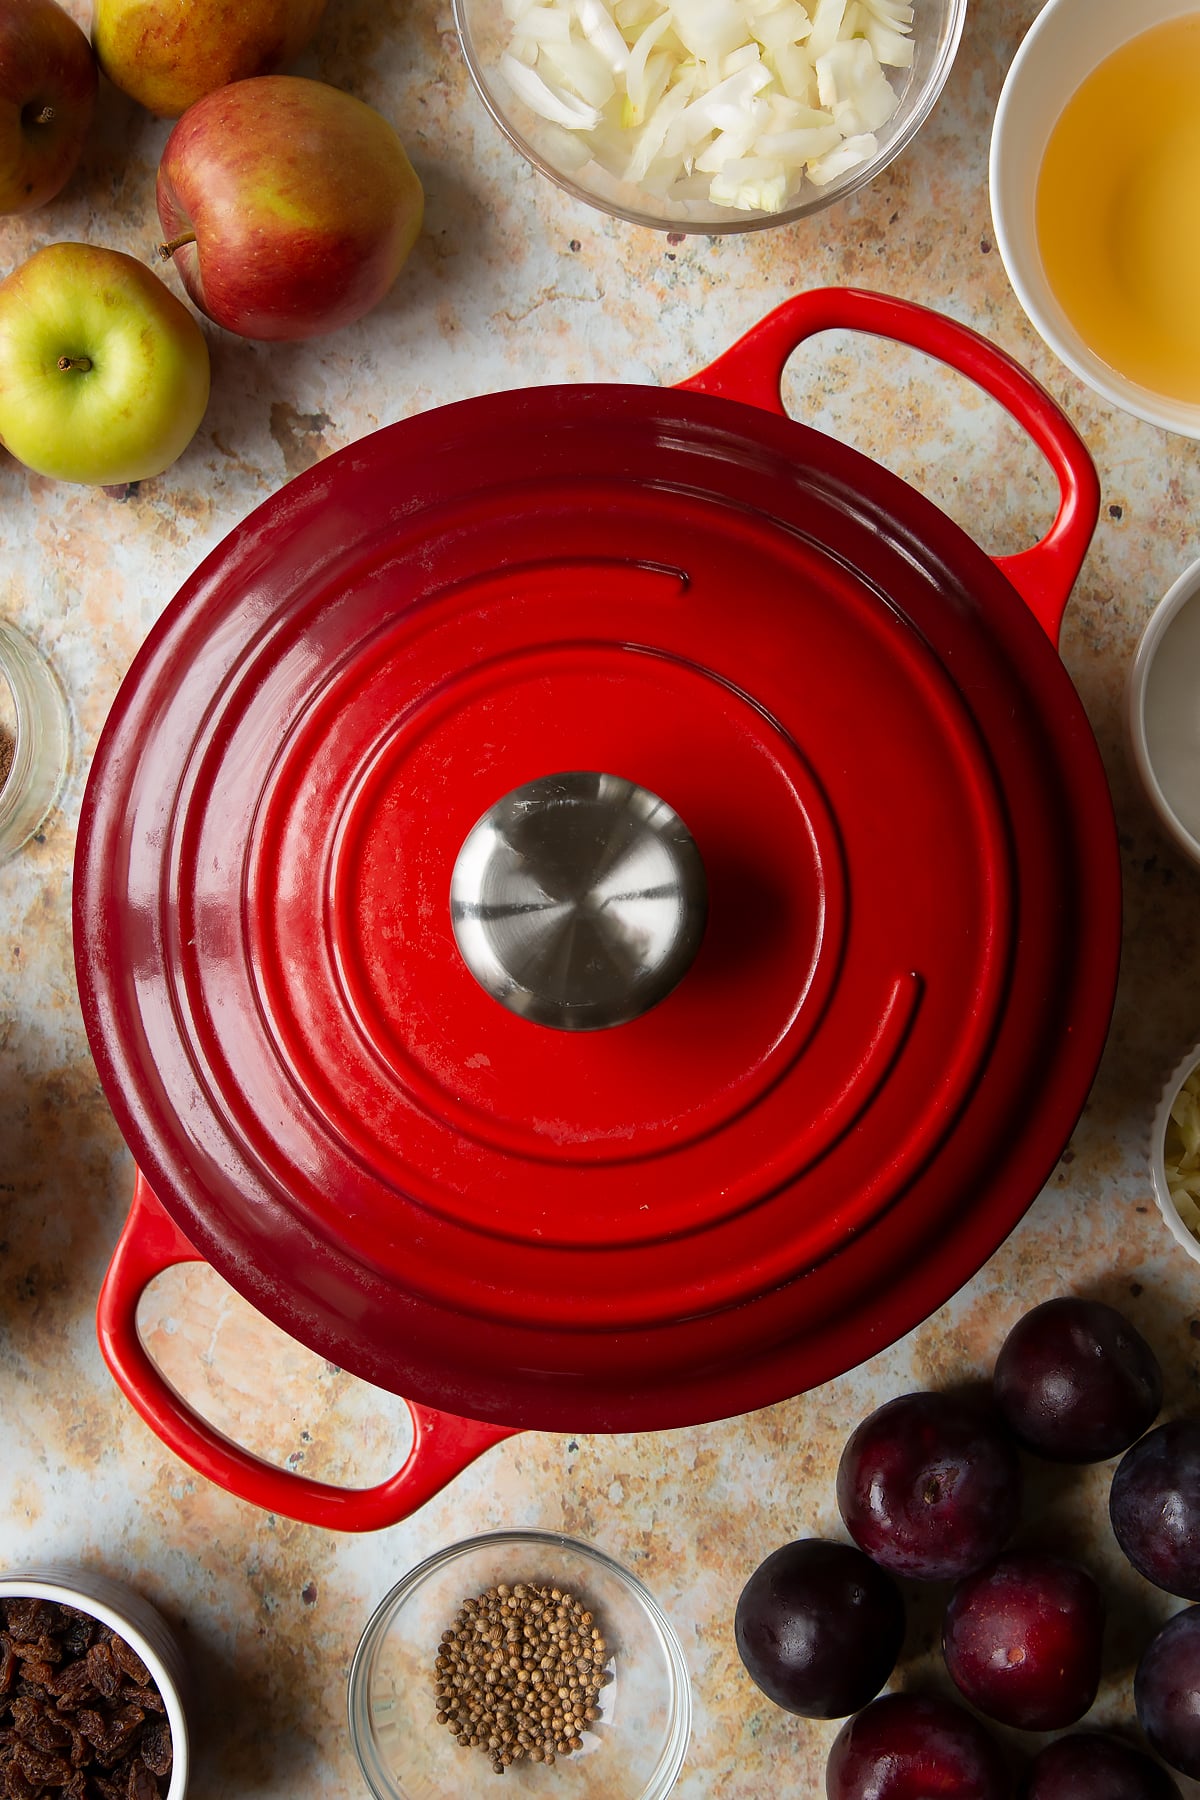 Lidded large pan. Ingredients to make a fruit chutney recipe surround the pan.